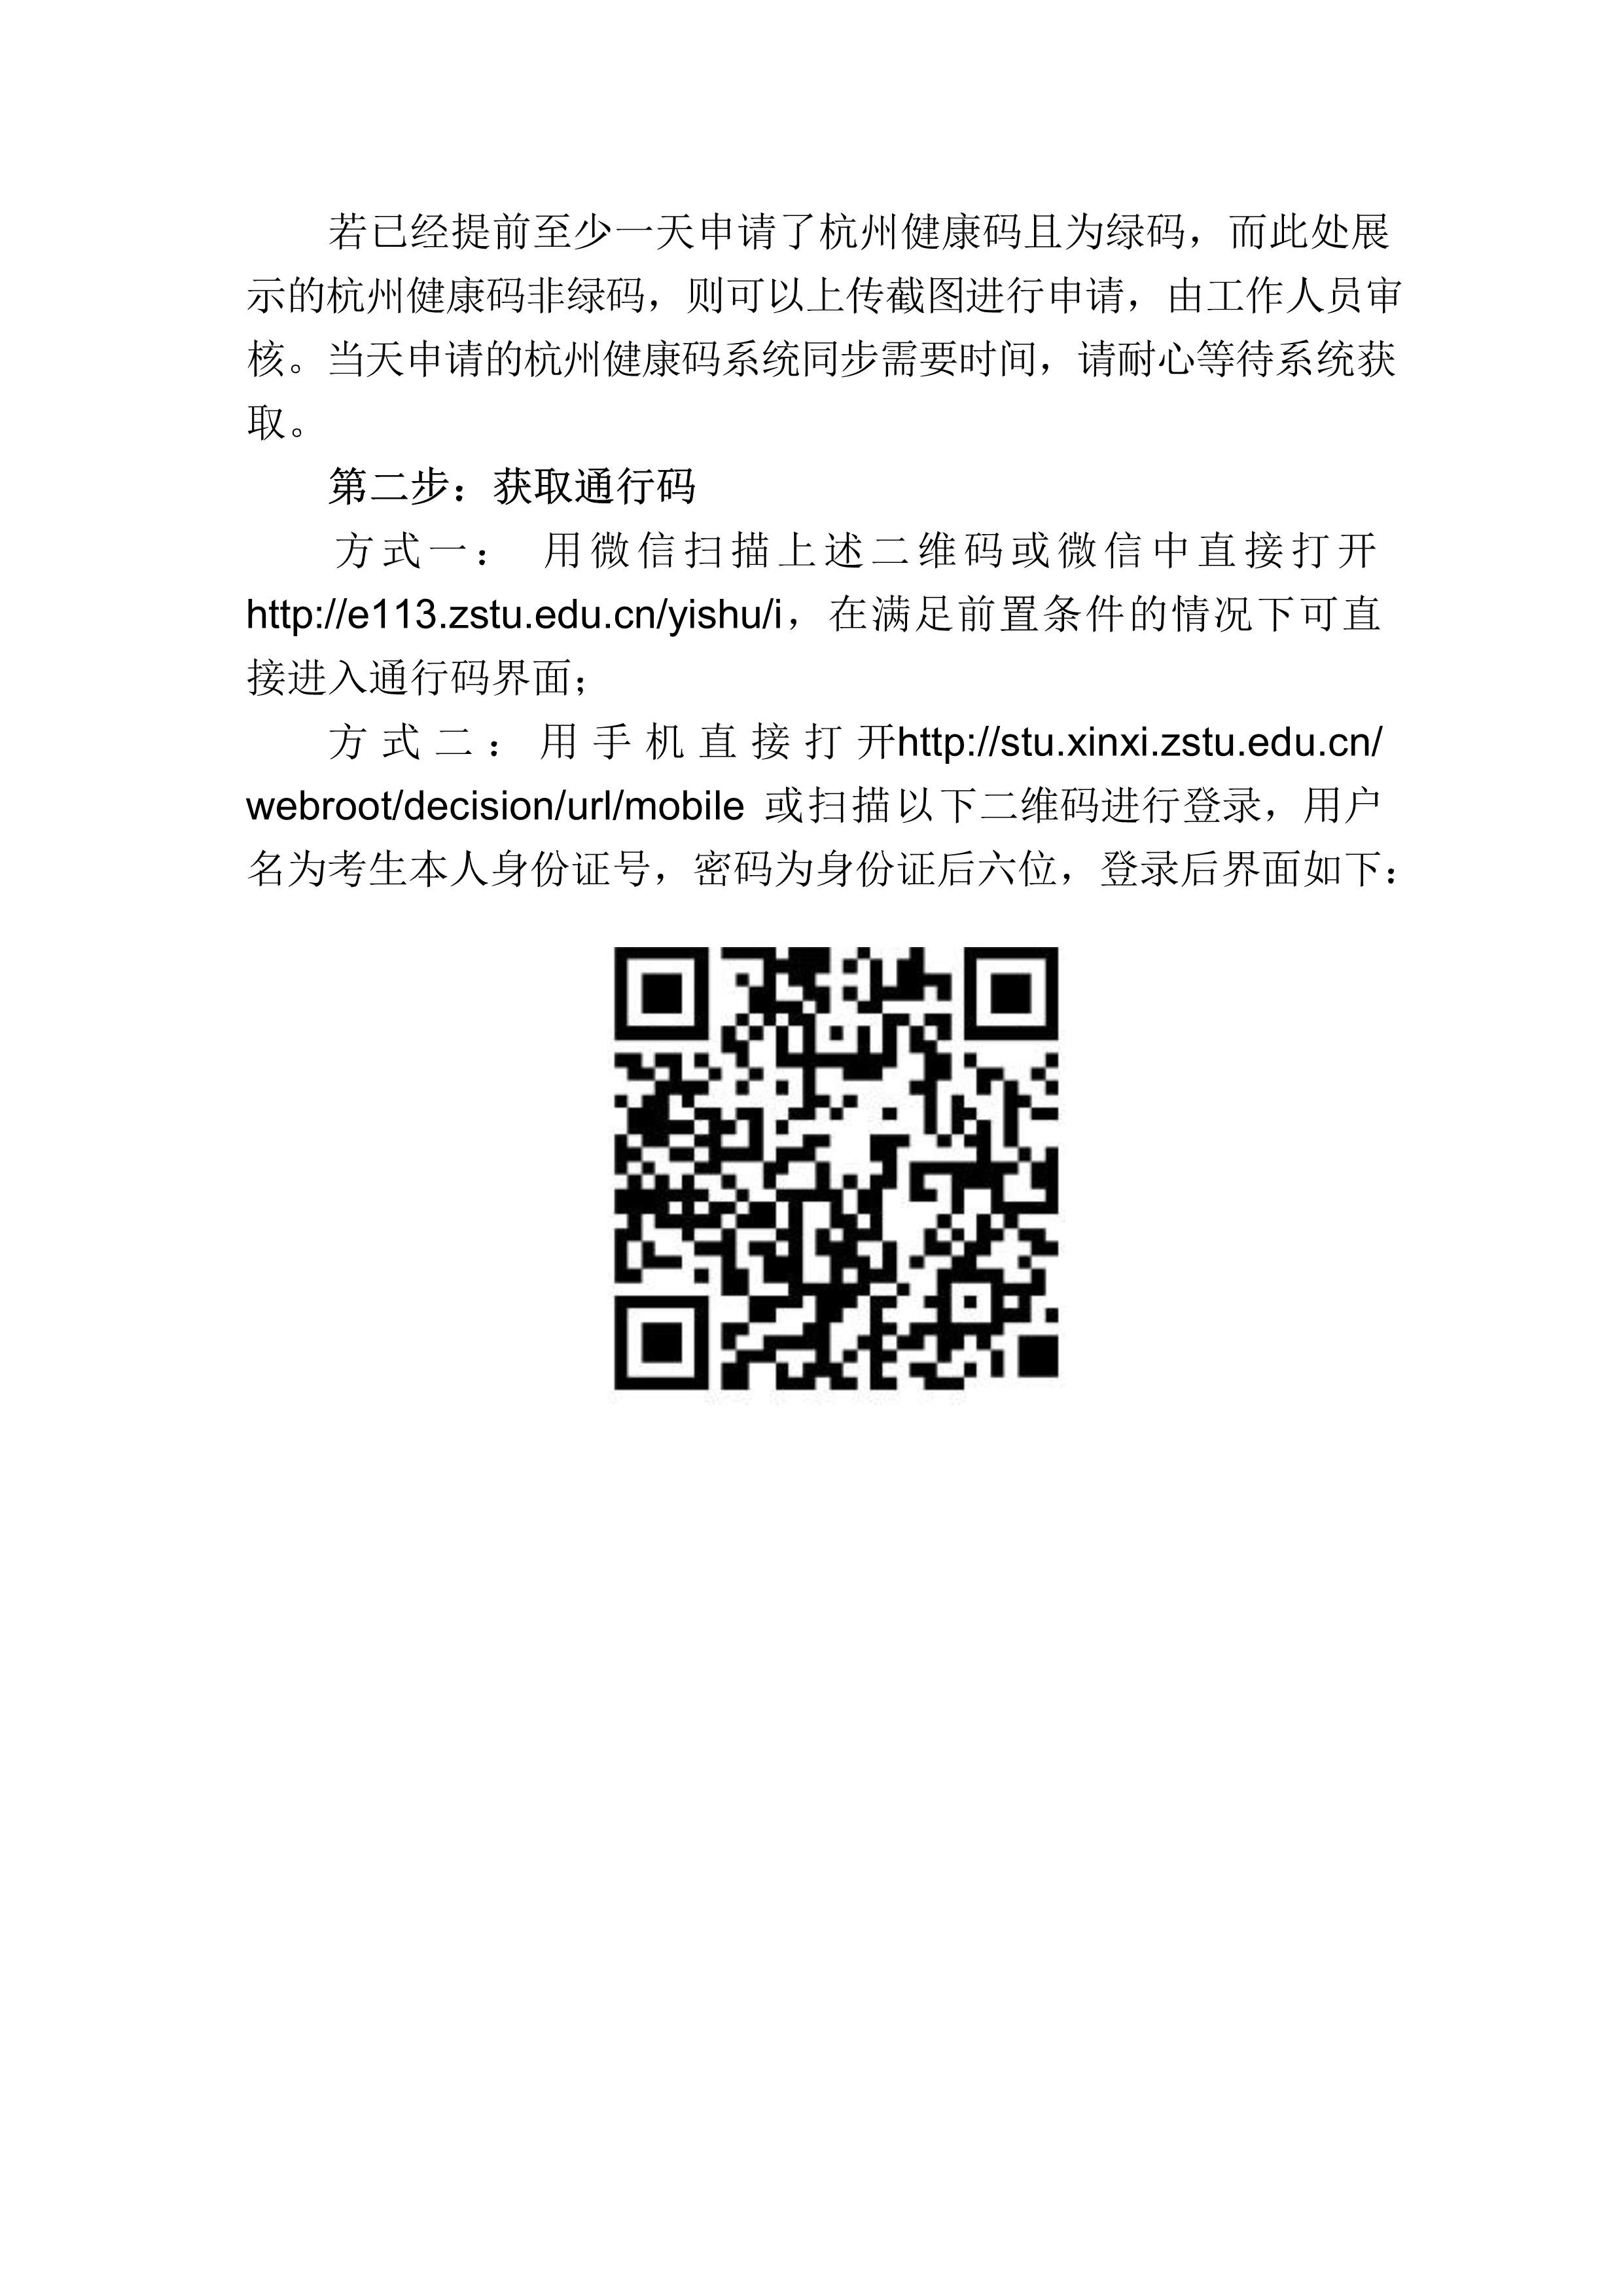 附件4：杭州考点考生防疫须知_6.jpg